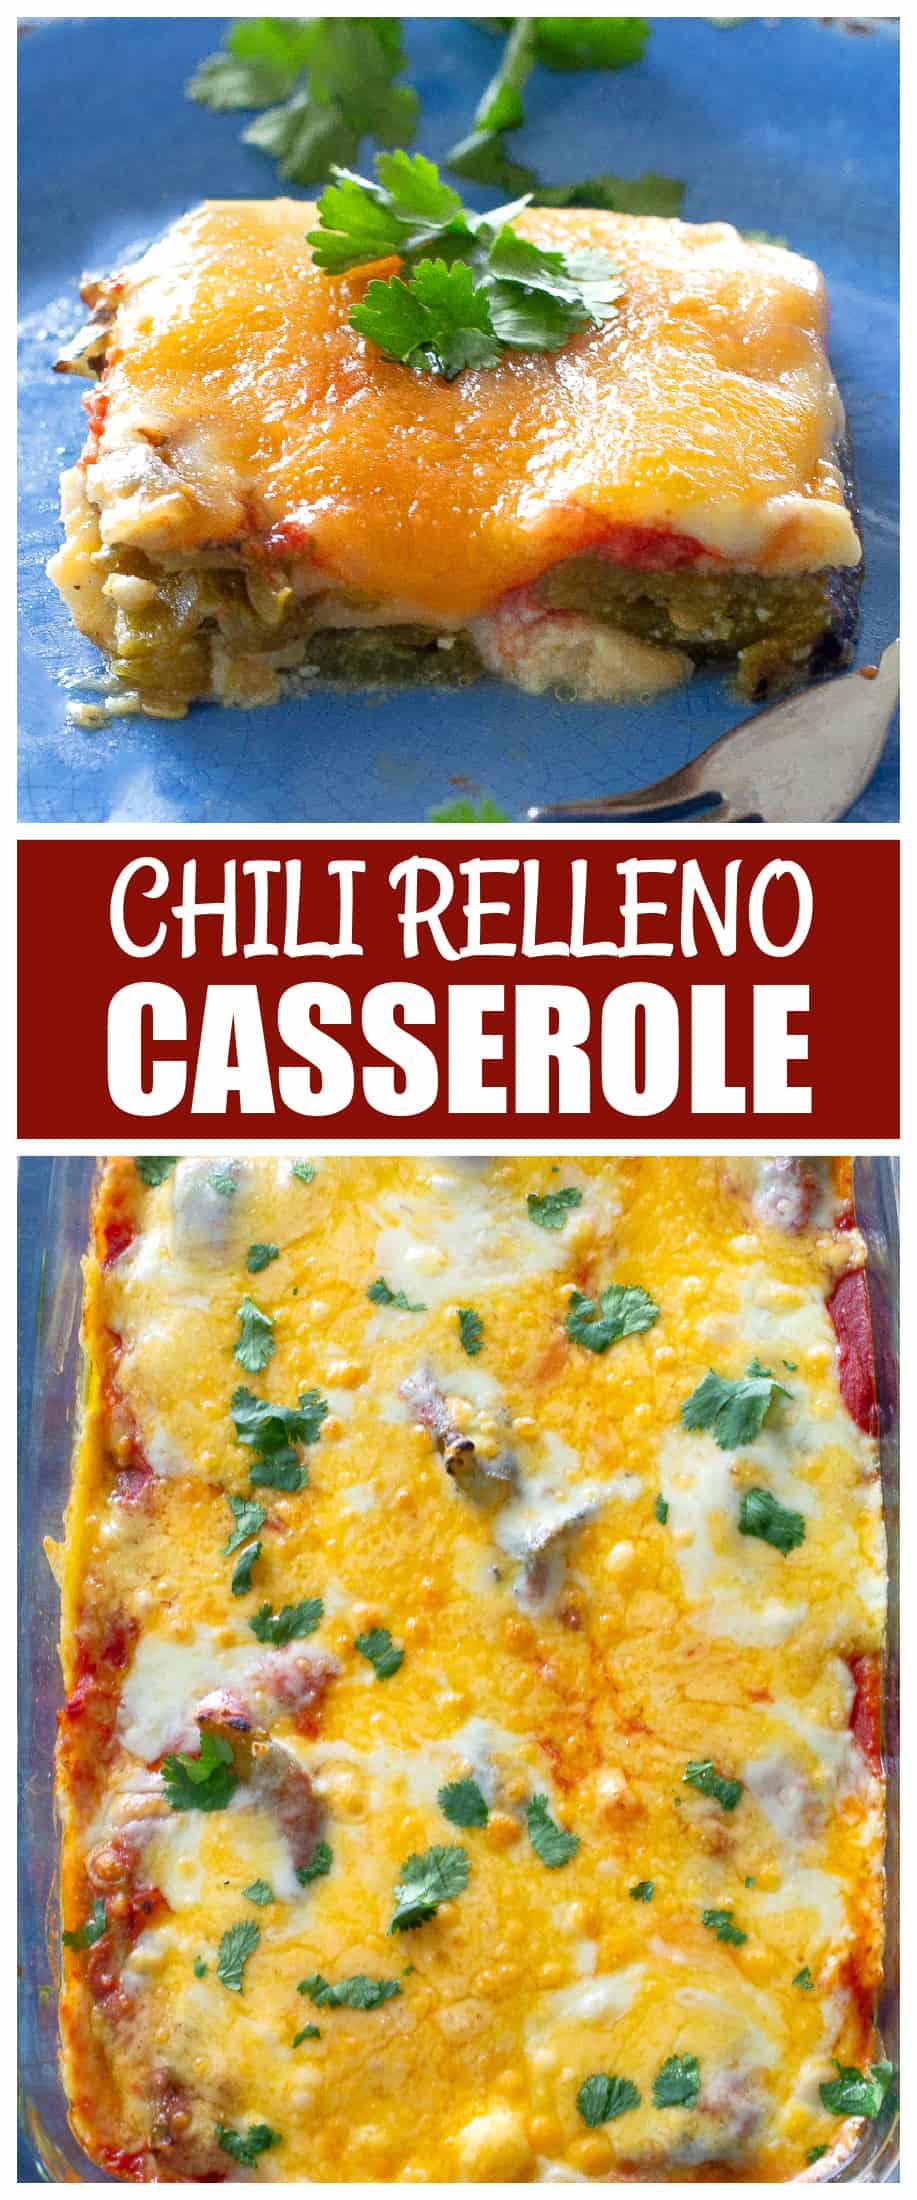 O Chili Relleno Casserole tem camadas de pimenta, ovos, queijo e uma leve camada de molho de tomate.  Este prato mexicano pode ser servido no café da manhã ou no jantar.